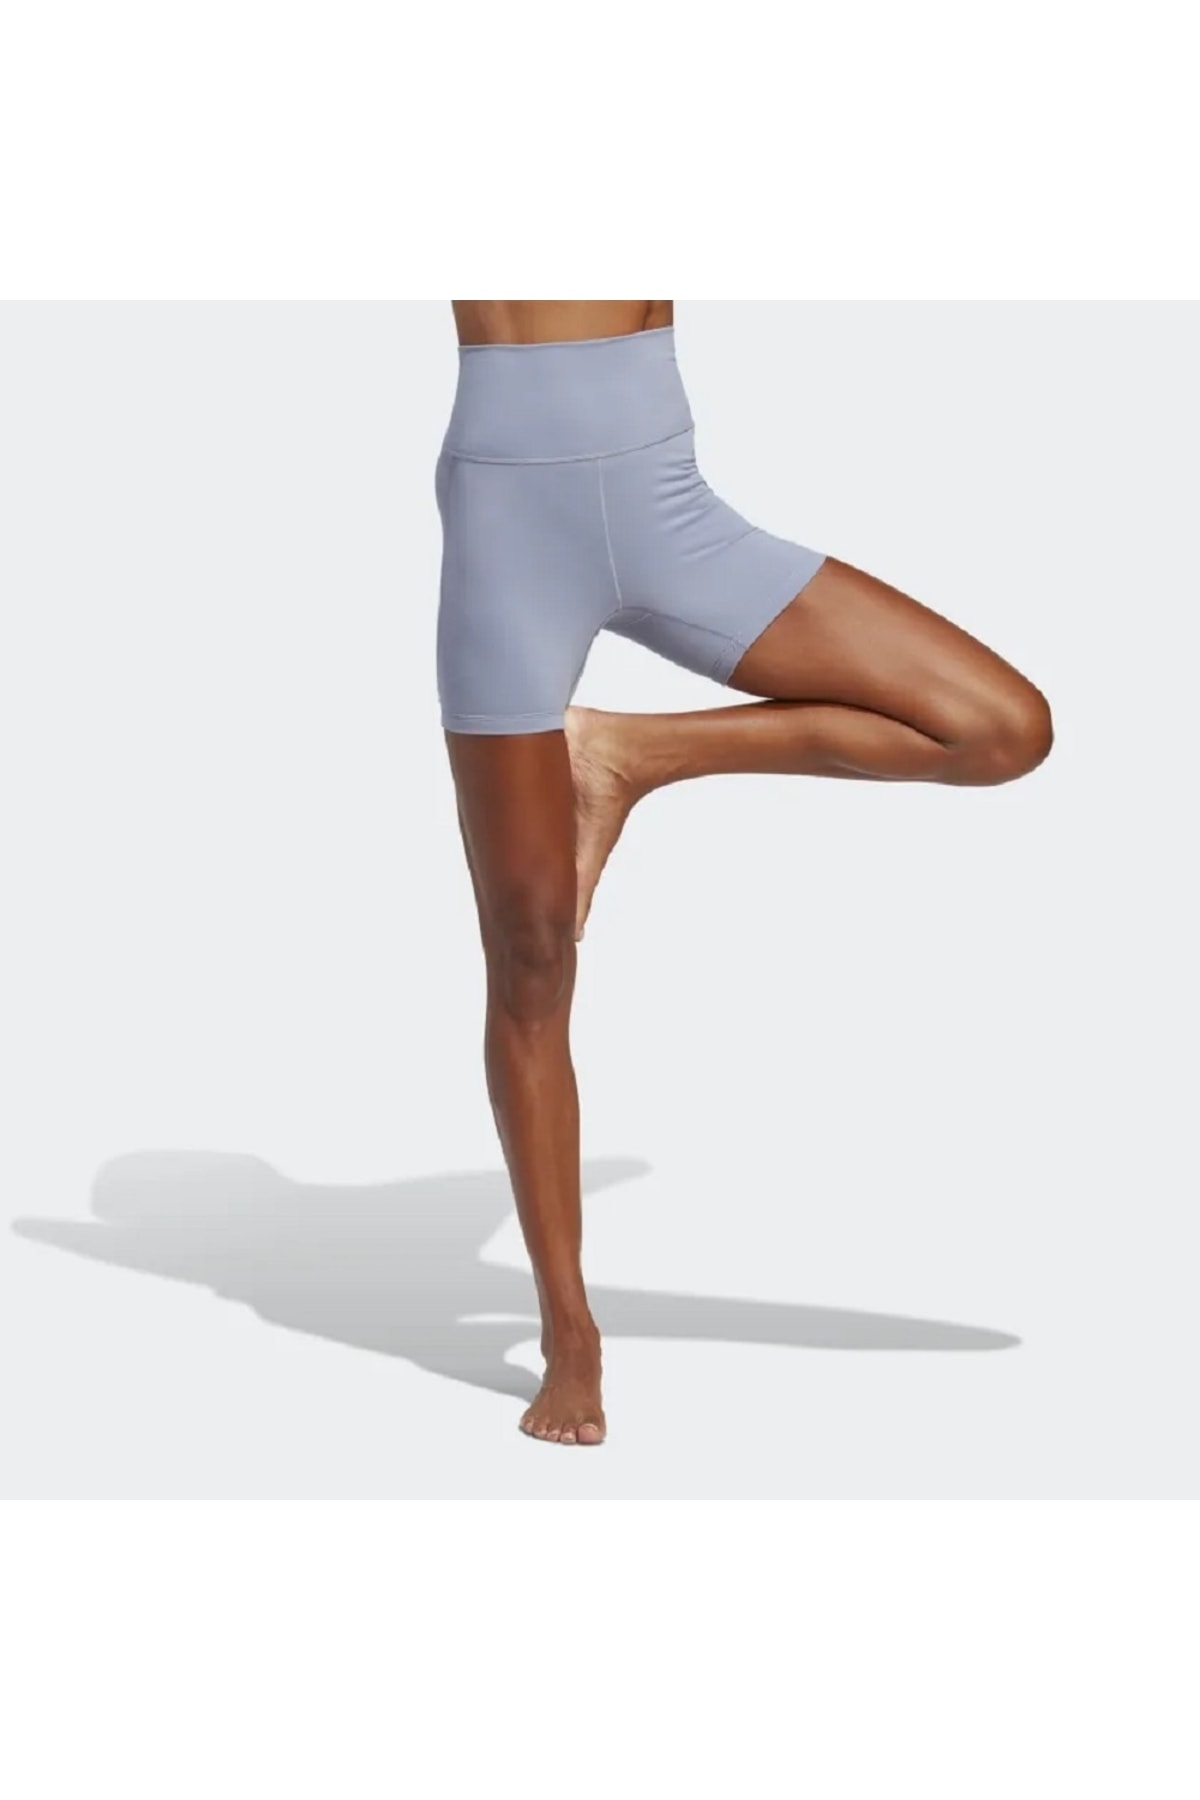 adidas Yoga Studio Five - Inch Kadın Tayt